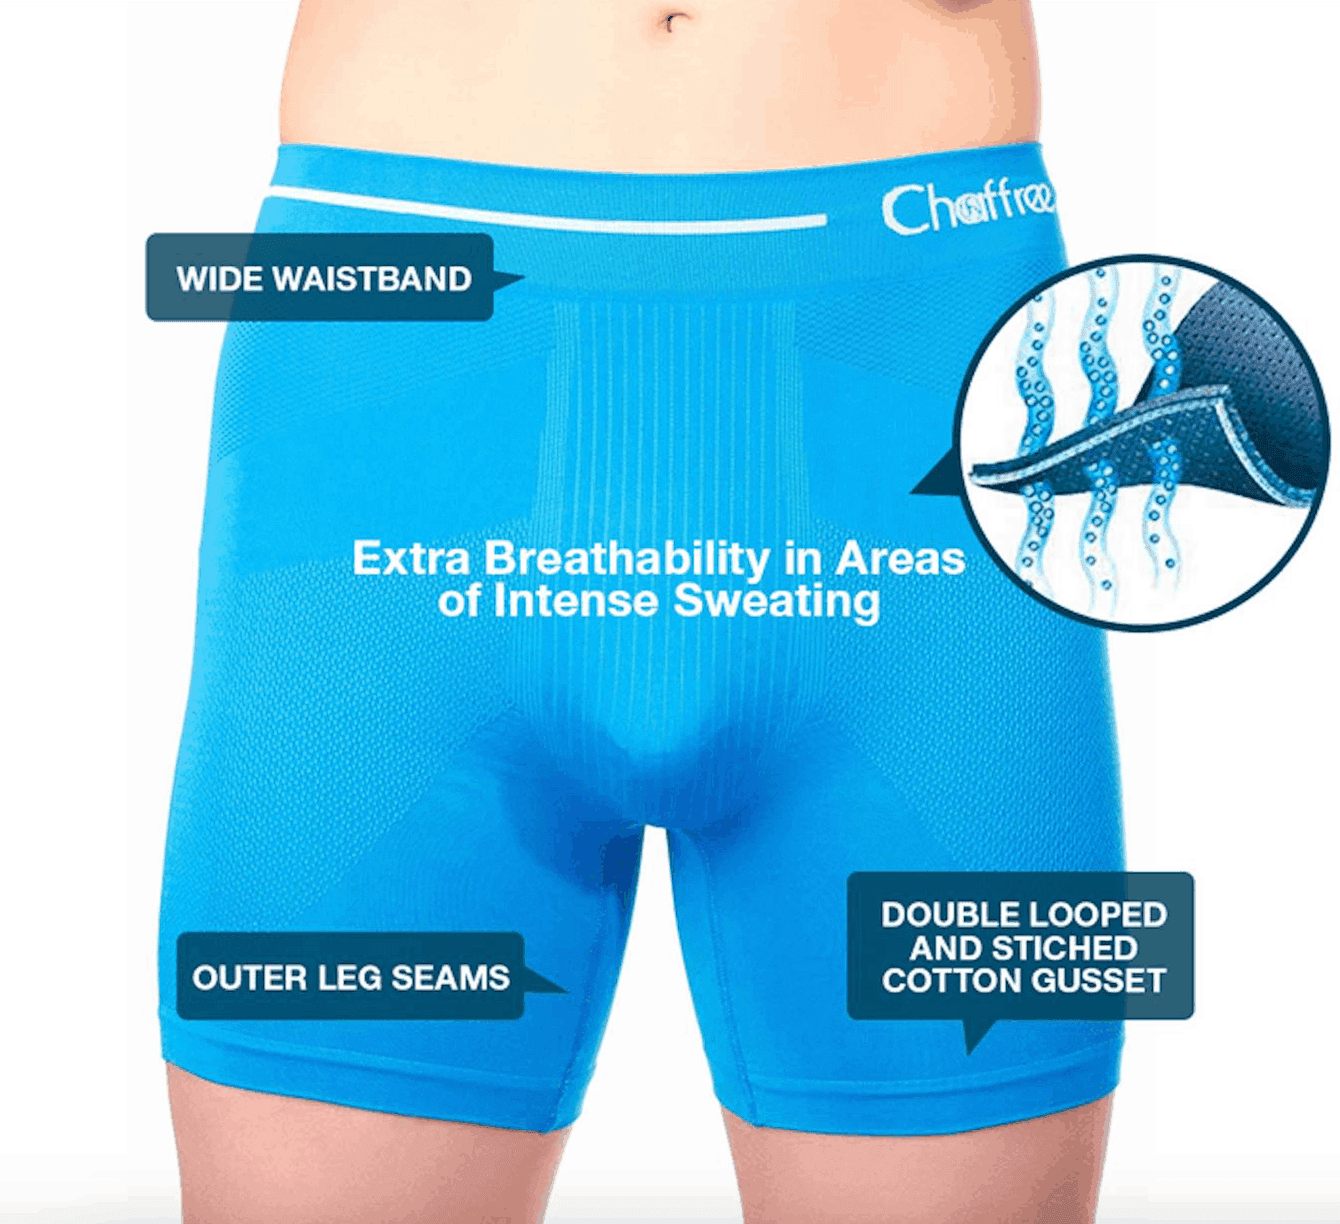 Men's Anti Chafing Underwear & Shorts